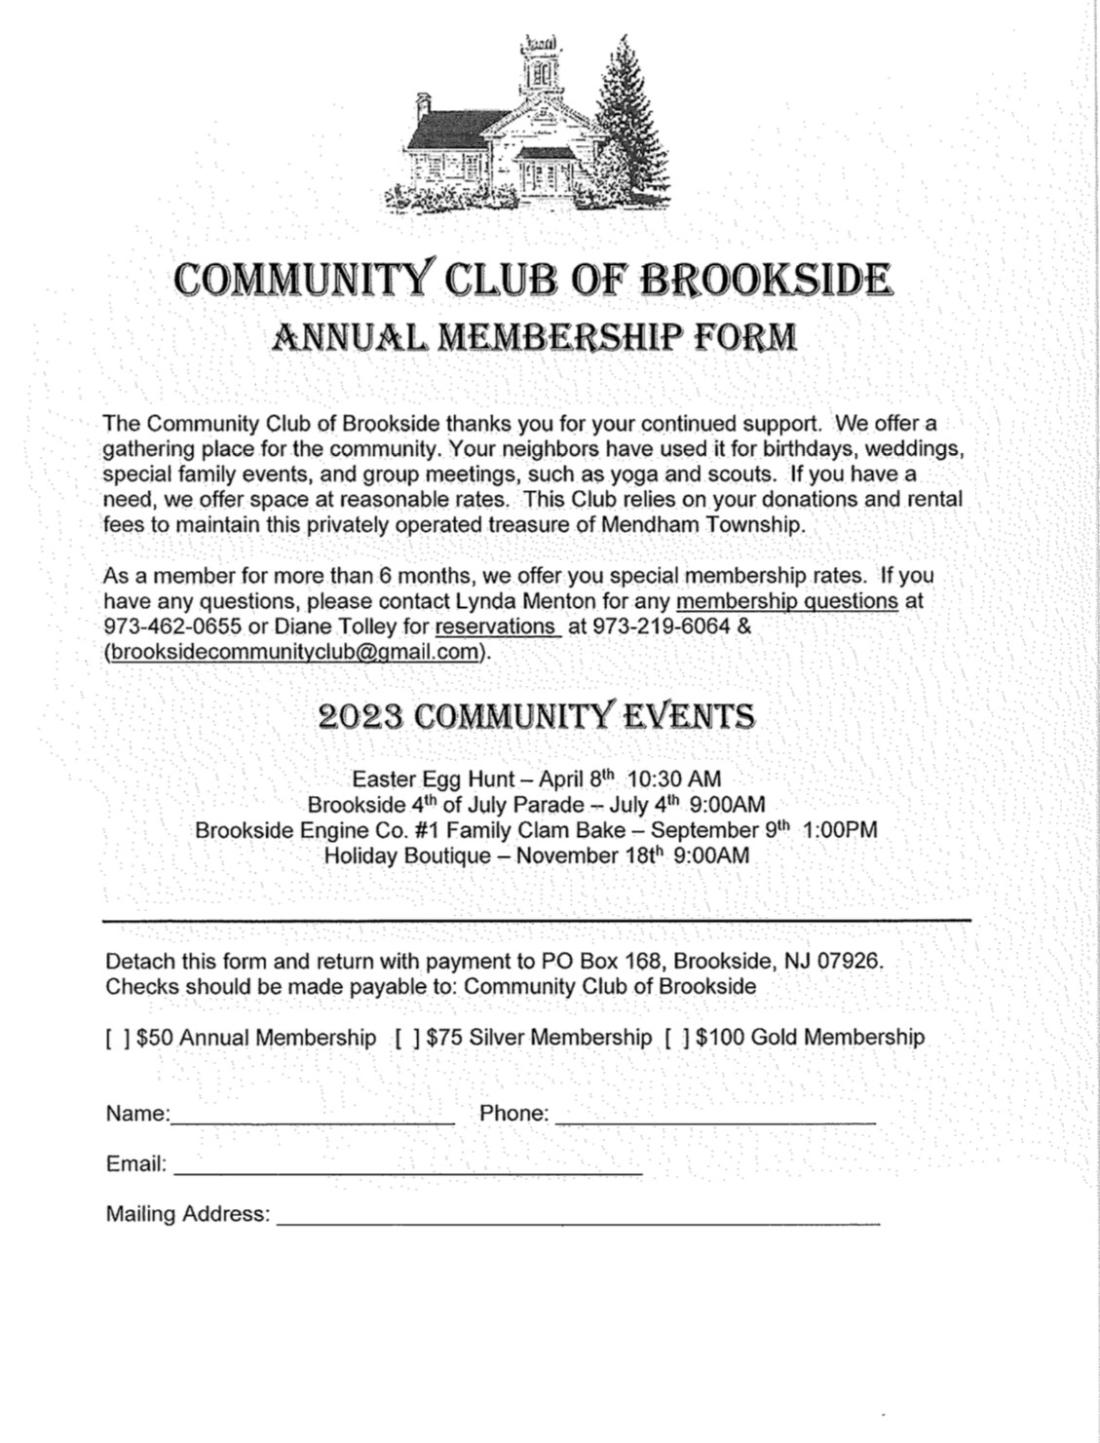 Brookside Community Club